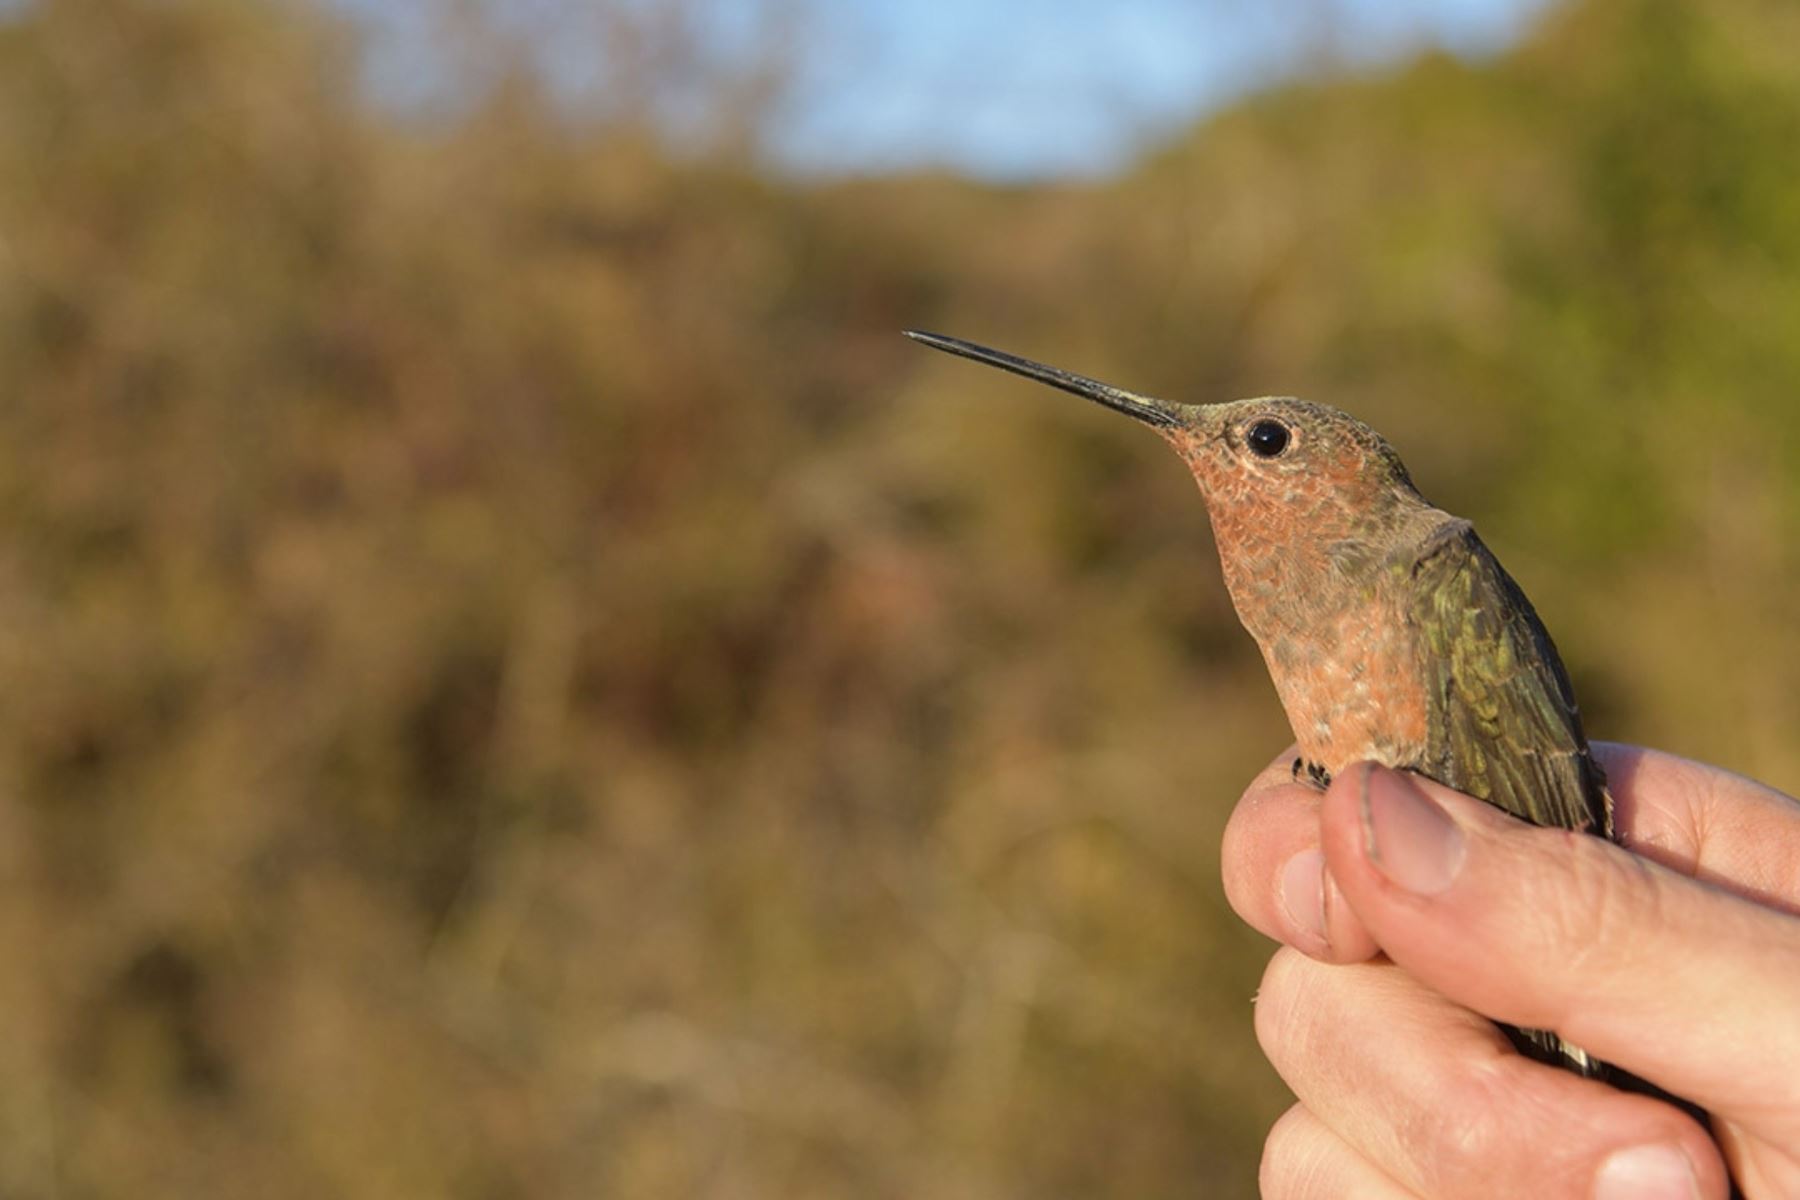 Investigadores de Estados Unidos, Chile y Perú descubrieron una nueva especie de colibrí gigante migratorio en los Andes peruanos. Foto cortesía: UNM Newsroom